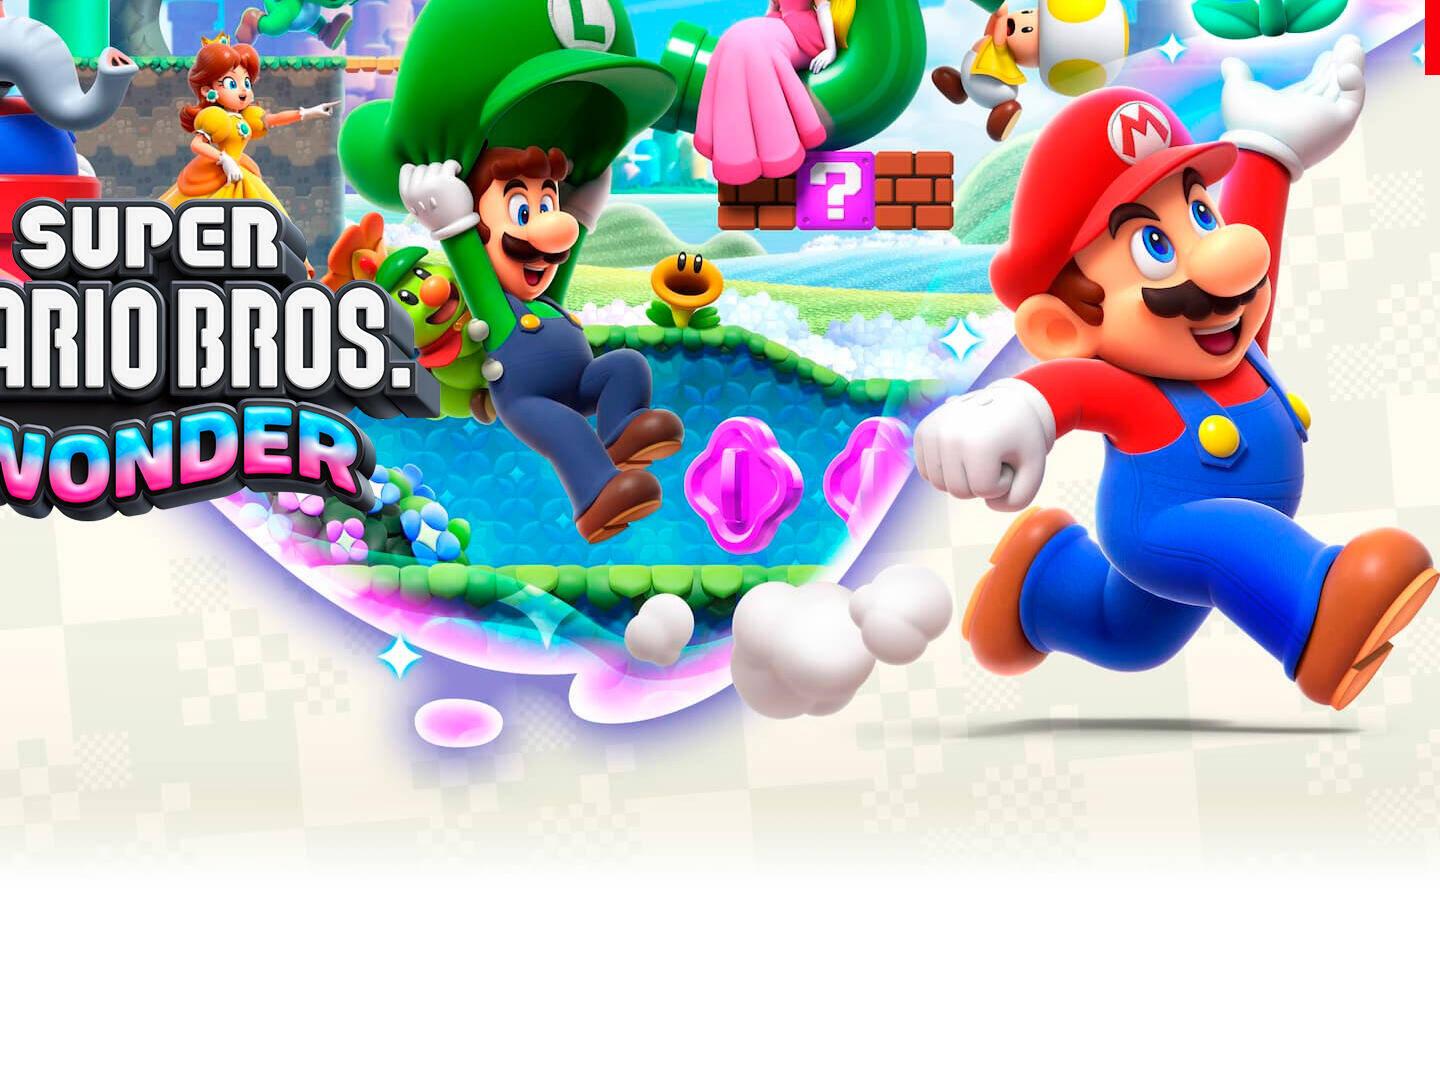 Super Mario Bros. Wonder – ¡Ya disponible! 